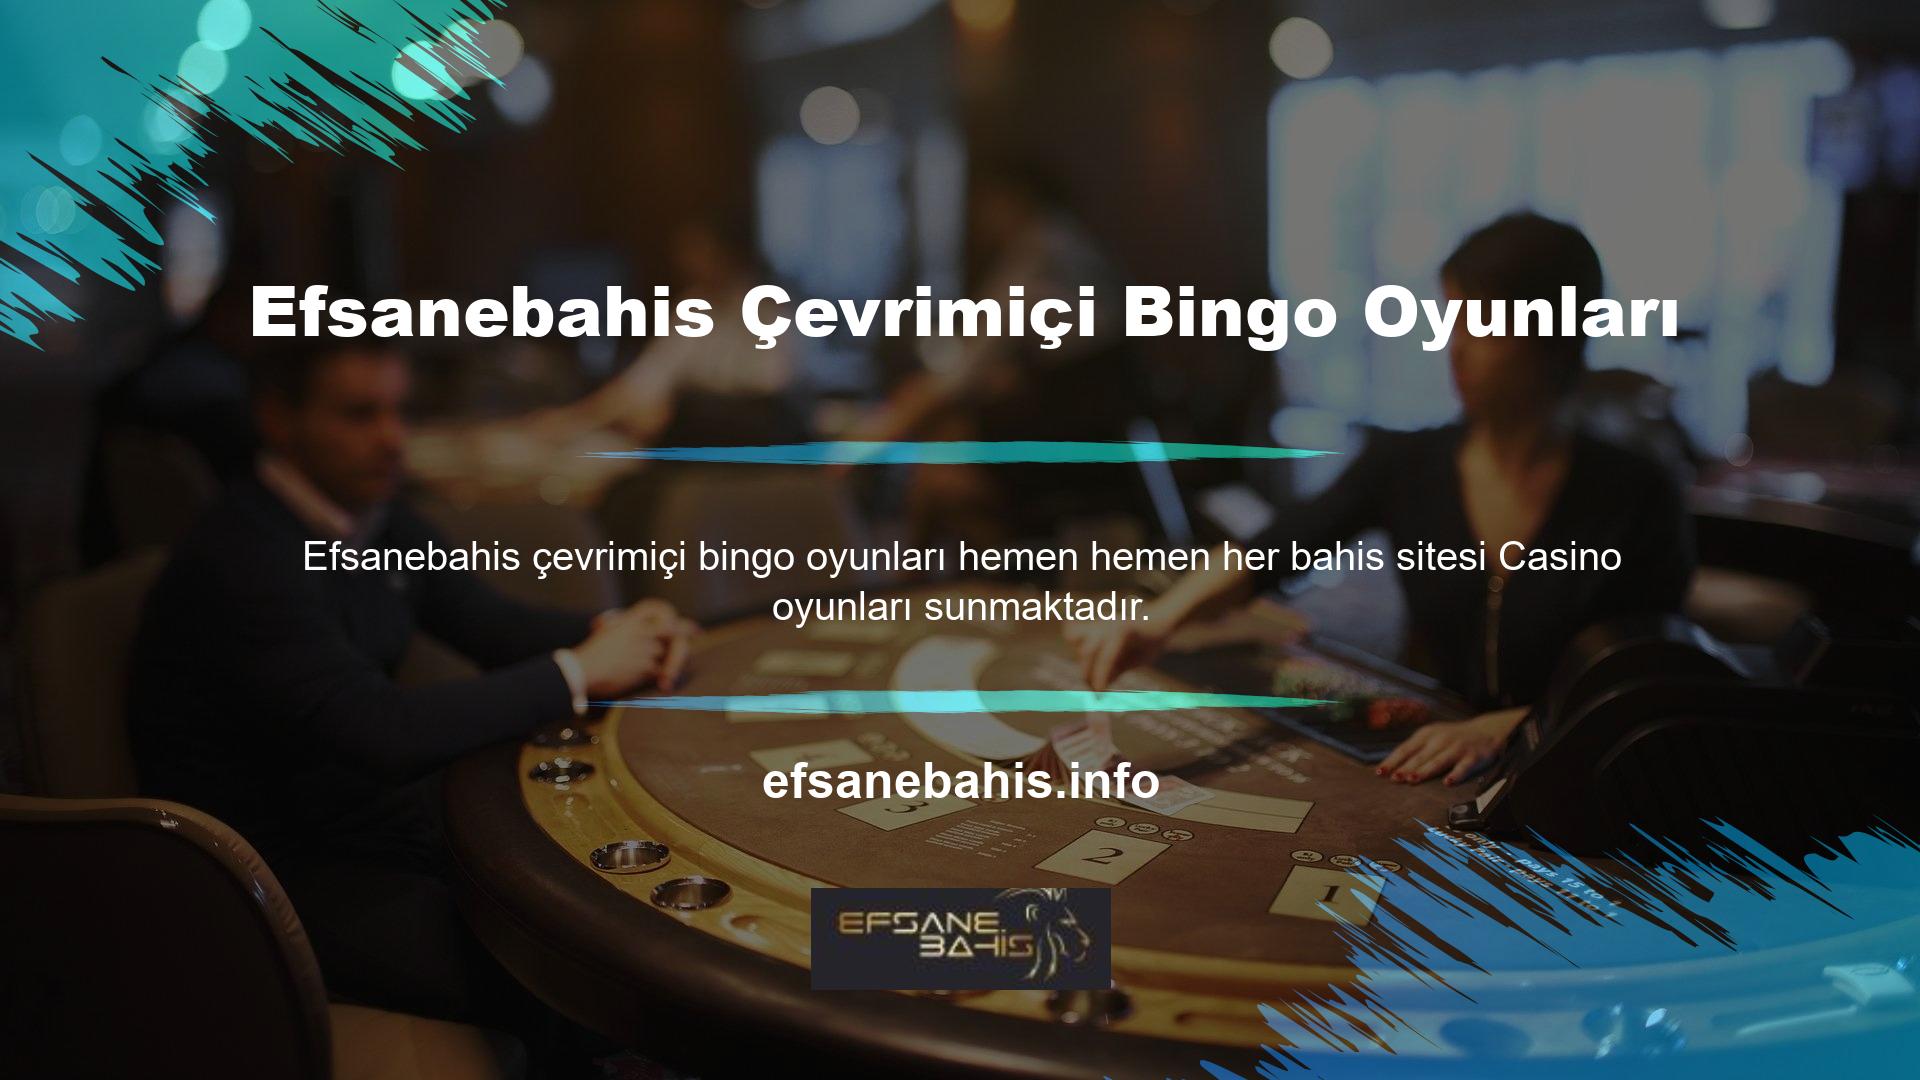 Ayrıca Casino oyunları arasında çoğu web sitesinde bulunabilen bingo oyunları da vardır